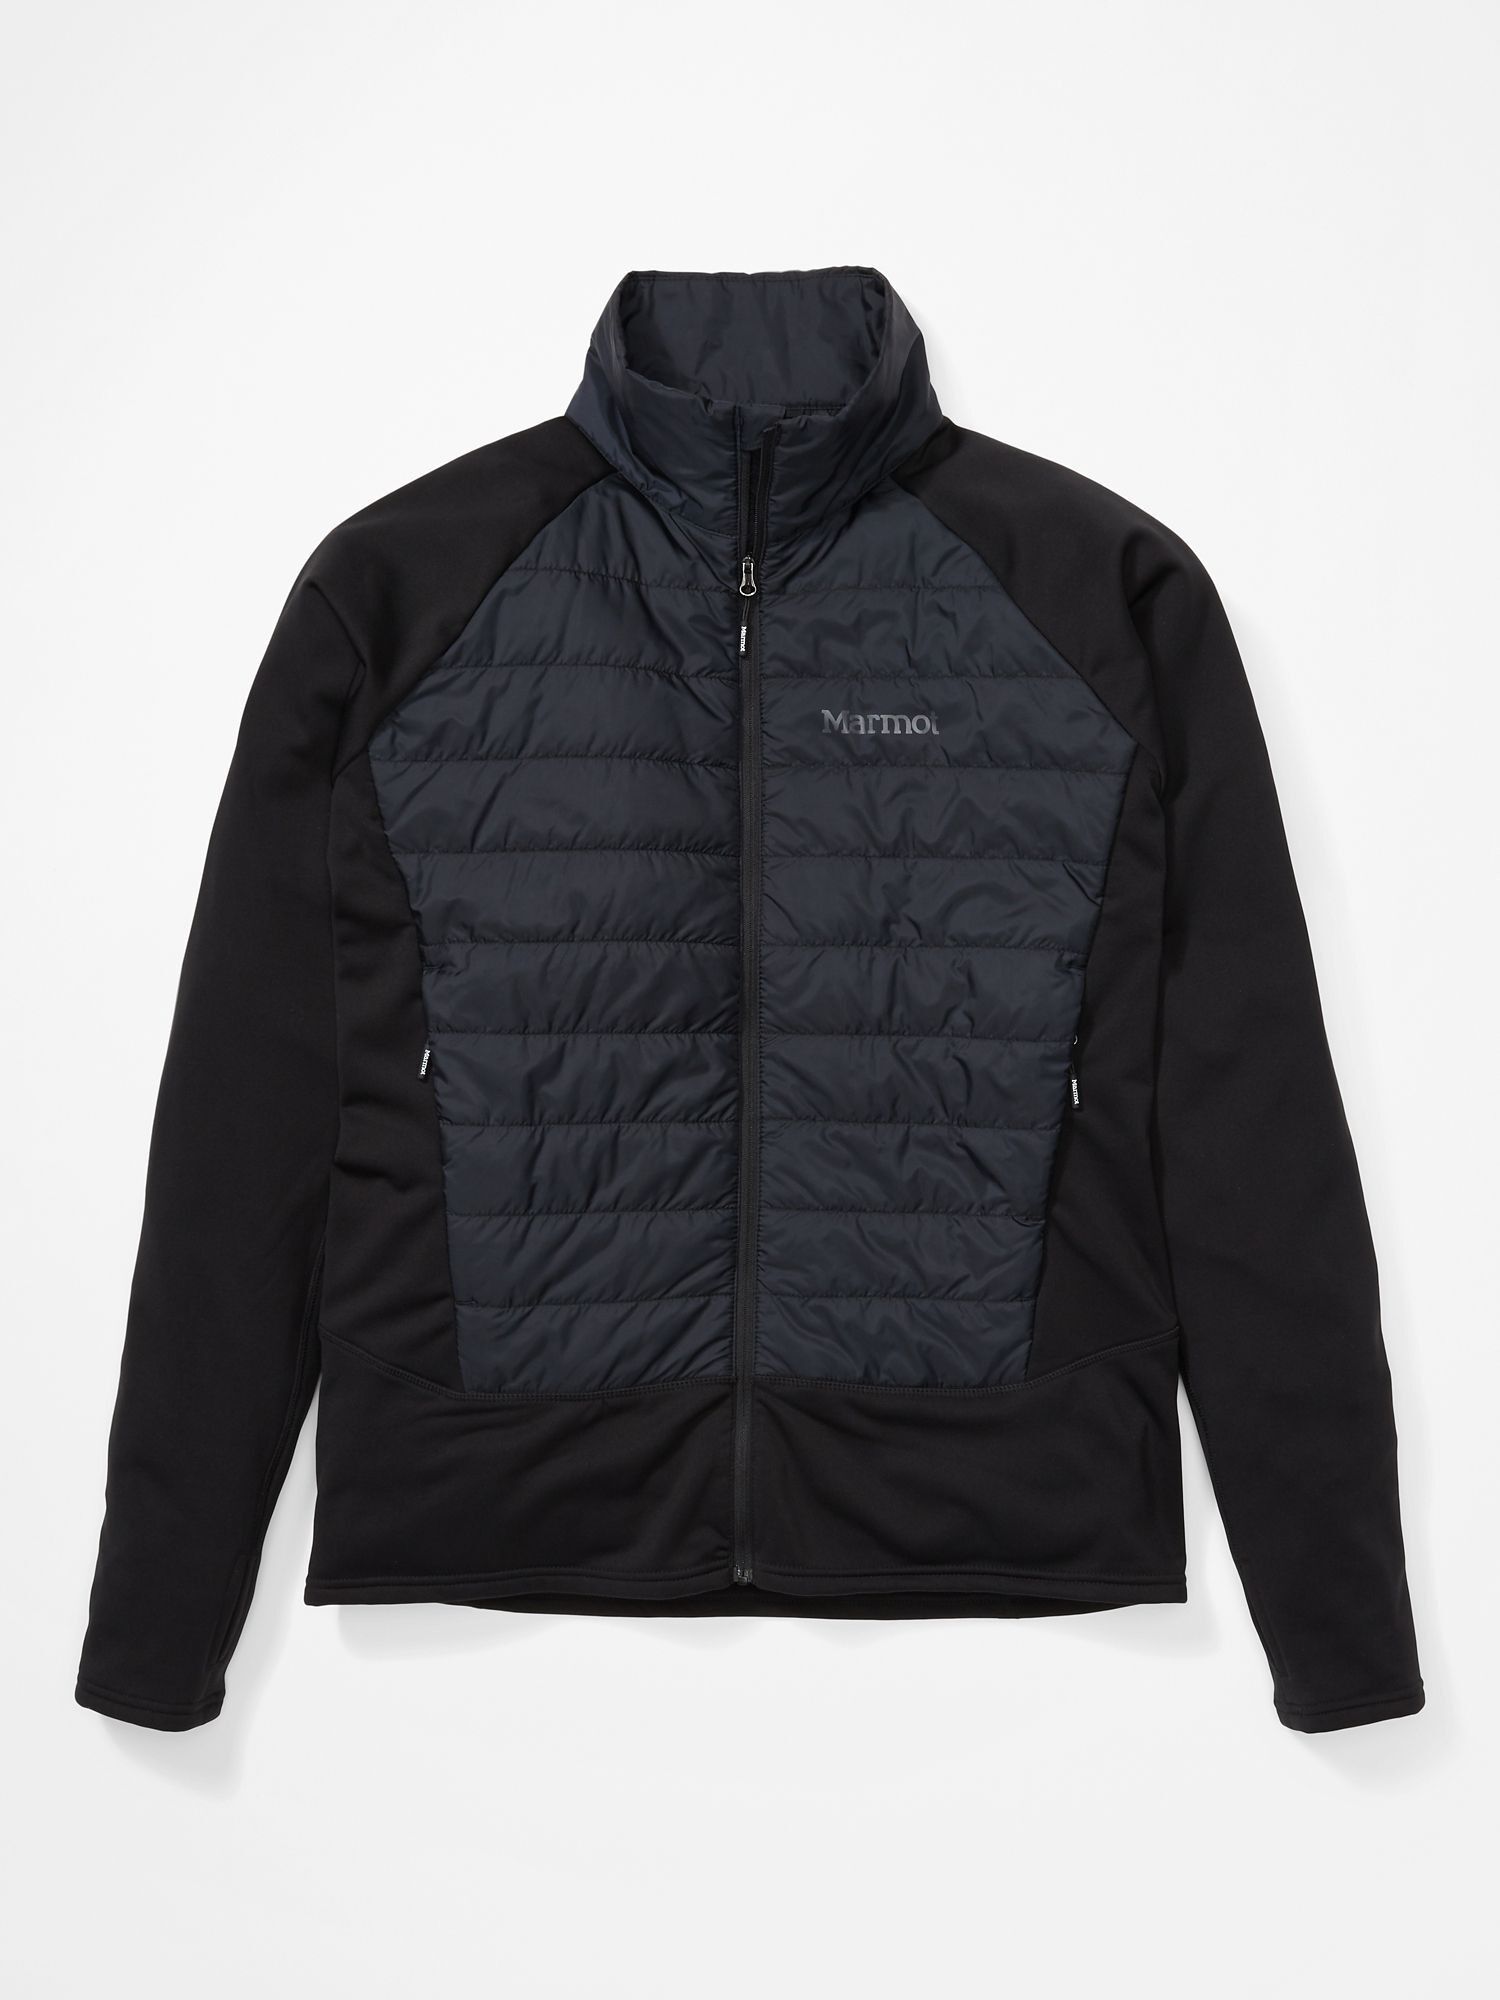 Marmot Variant Hybrid Jacket - Softshelljacke - Herren